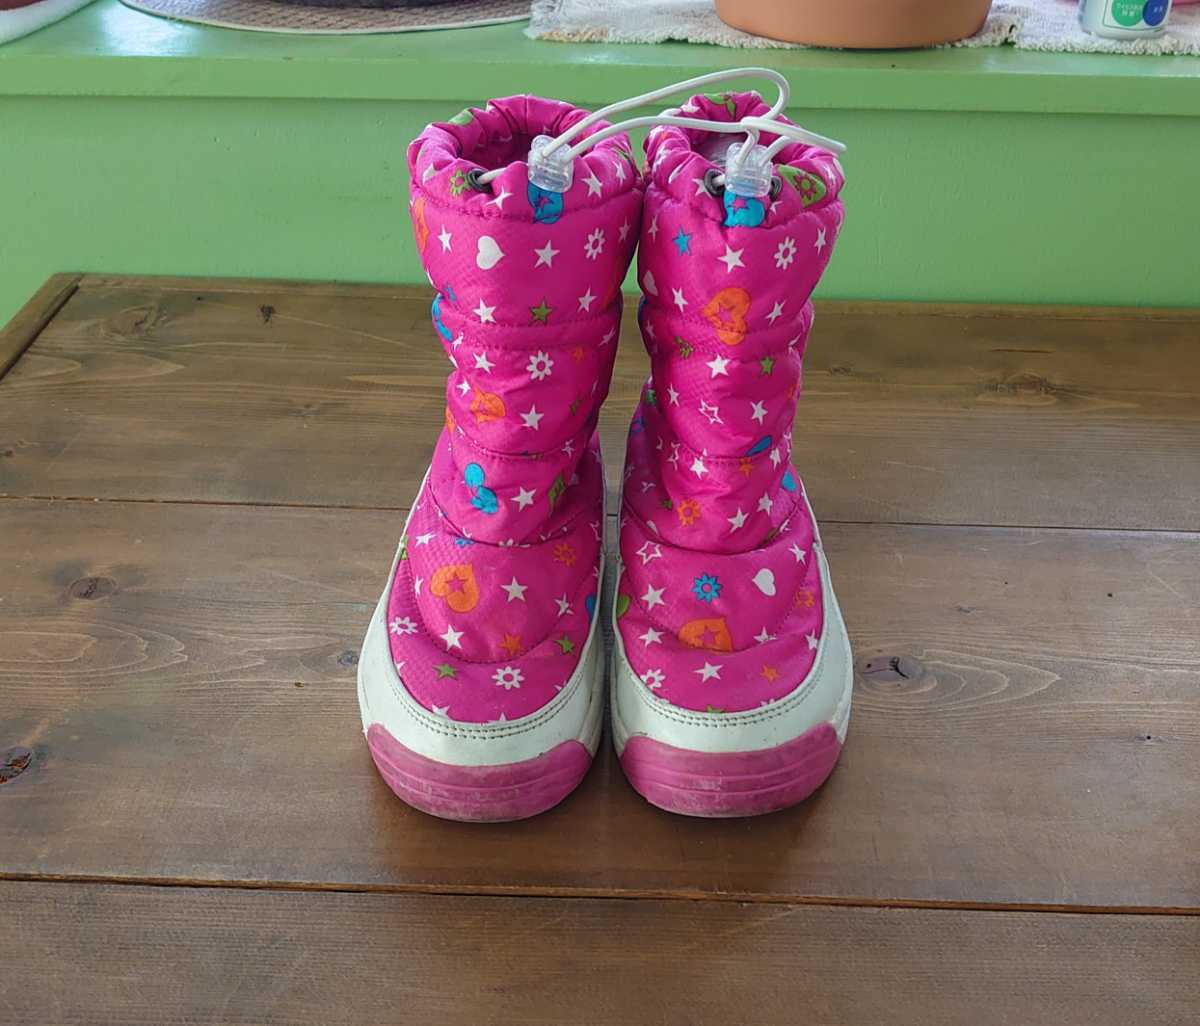 AIR WALK エアーウォーク スノーブーツ snow レインブーツ 長靴 20cm キッズ 子供 こども 雨や雪に　ソリ、スキーや雪遊びに ピンク可愛い_画像4